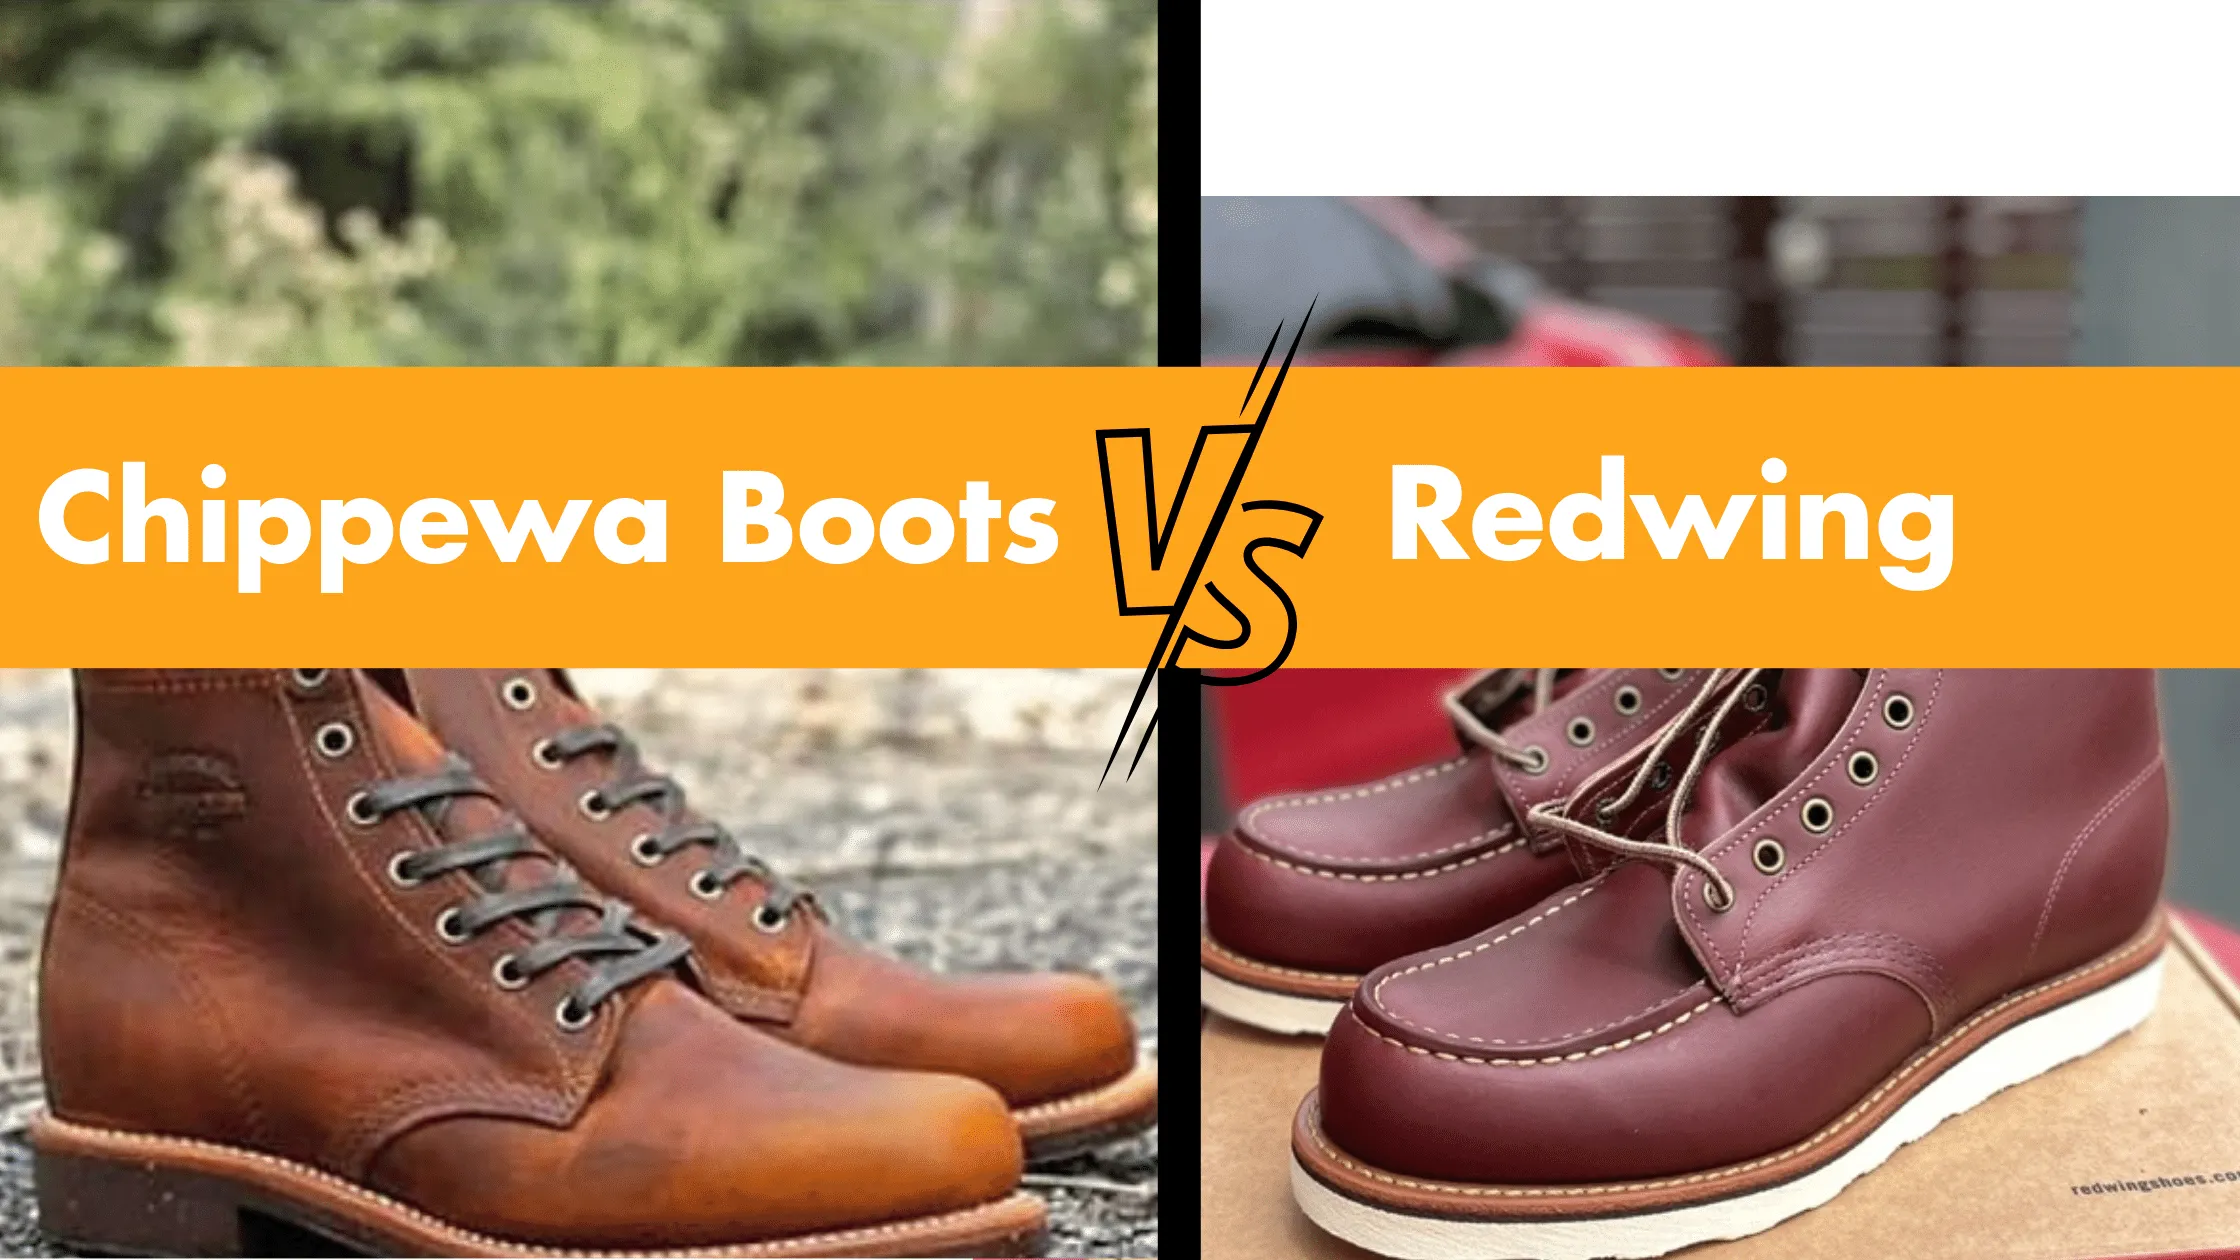 Chippewa Boots VS Redwing